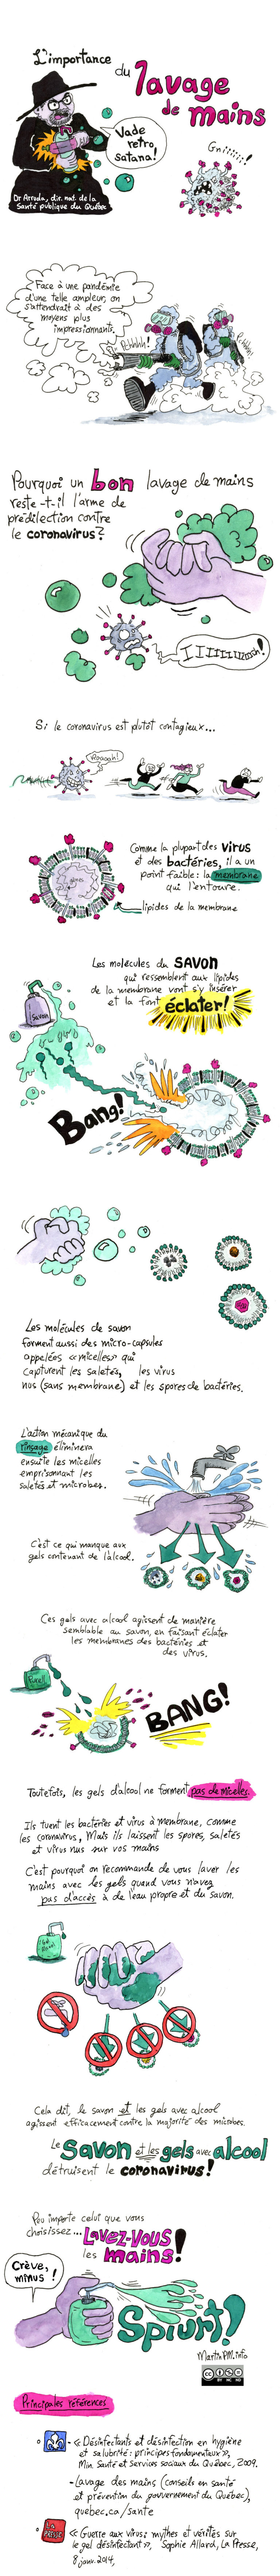 Bande dessinée de vulgarisation scientifique sur le lavage des mains dans la prévention de la pandémie de coronavirus et de la COVID-19.